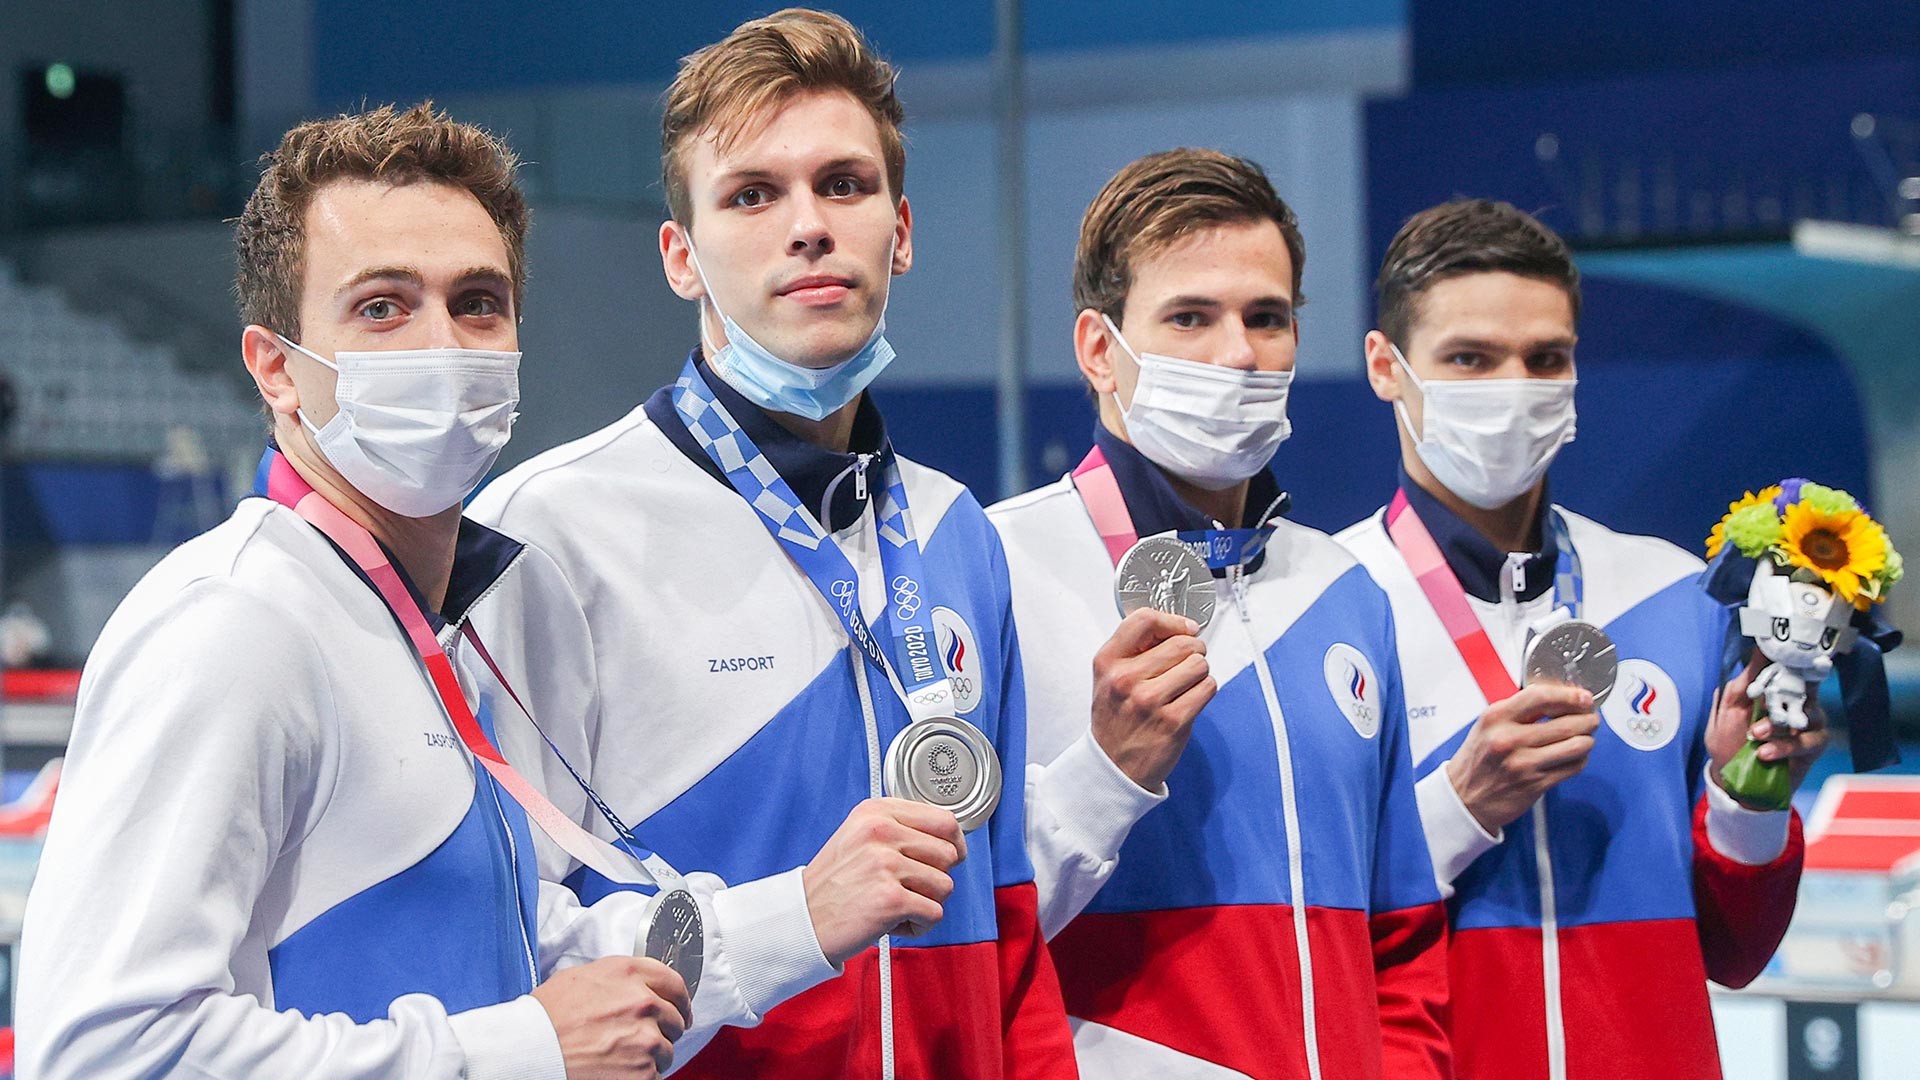 Les nageurs du Comité olympique russe posent avec leurs médailles d'argent au Centre aquatique de Tokyo lors des Jeux olympiques d'été de 2020